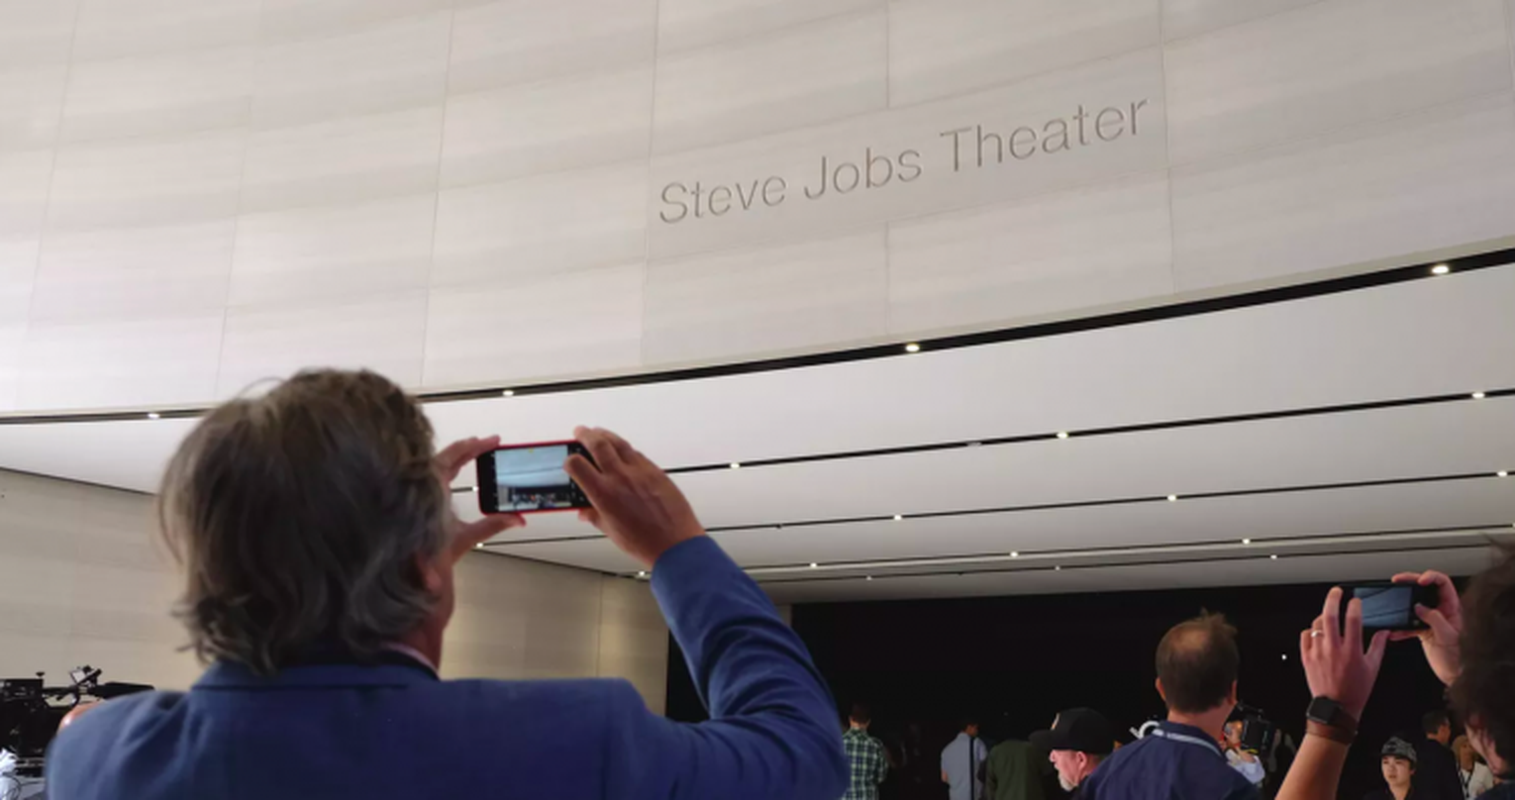 Nhung bi mat day bat ngo ben trong khan phong Steve Jobs Theater-Hinh-7